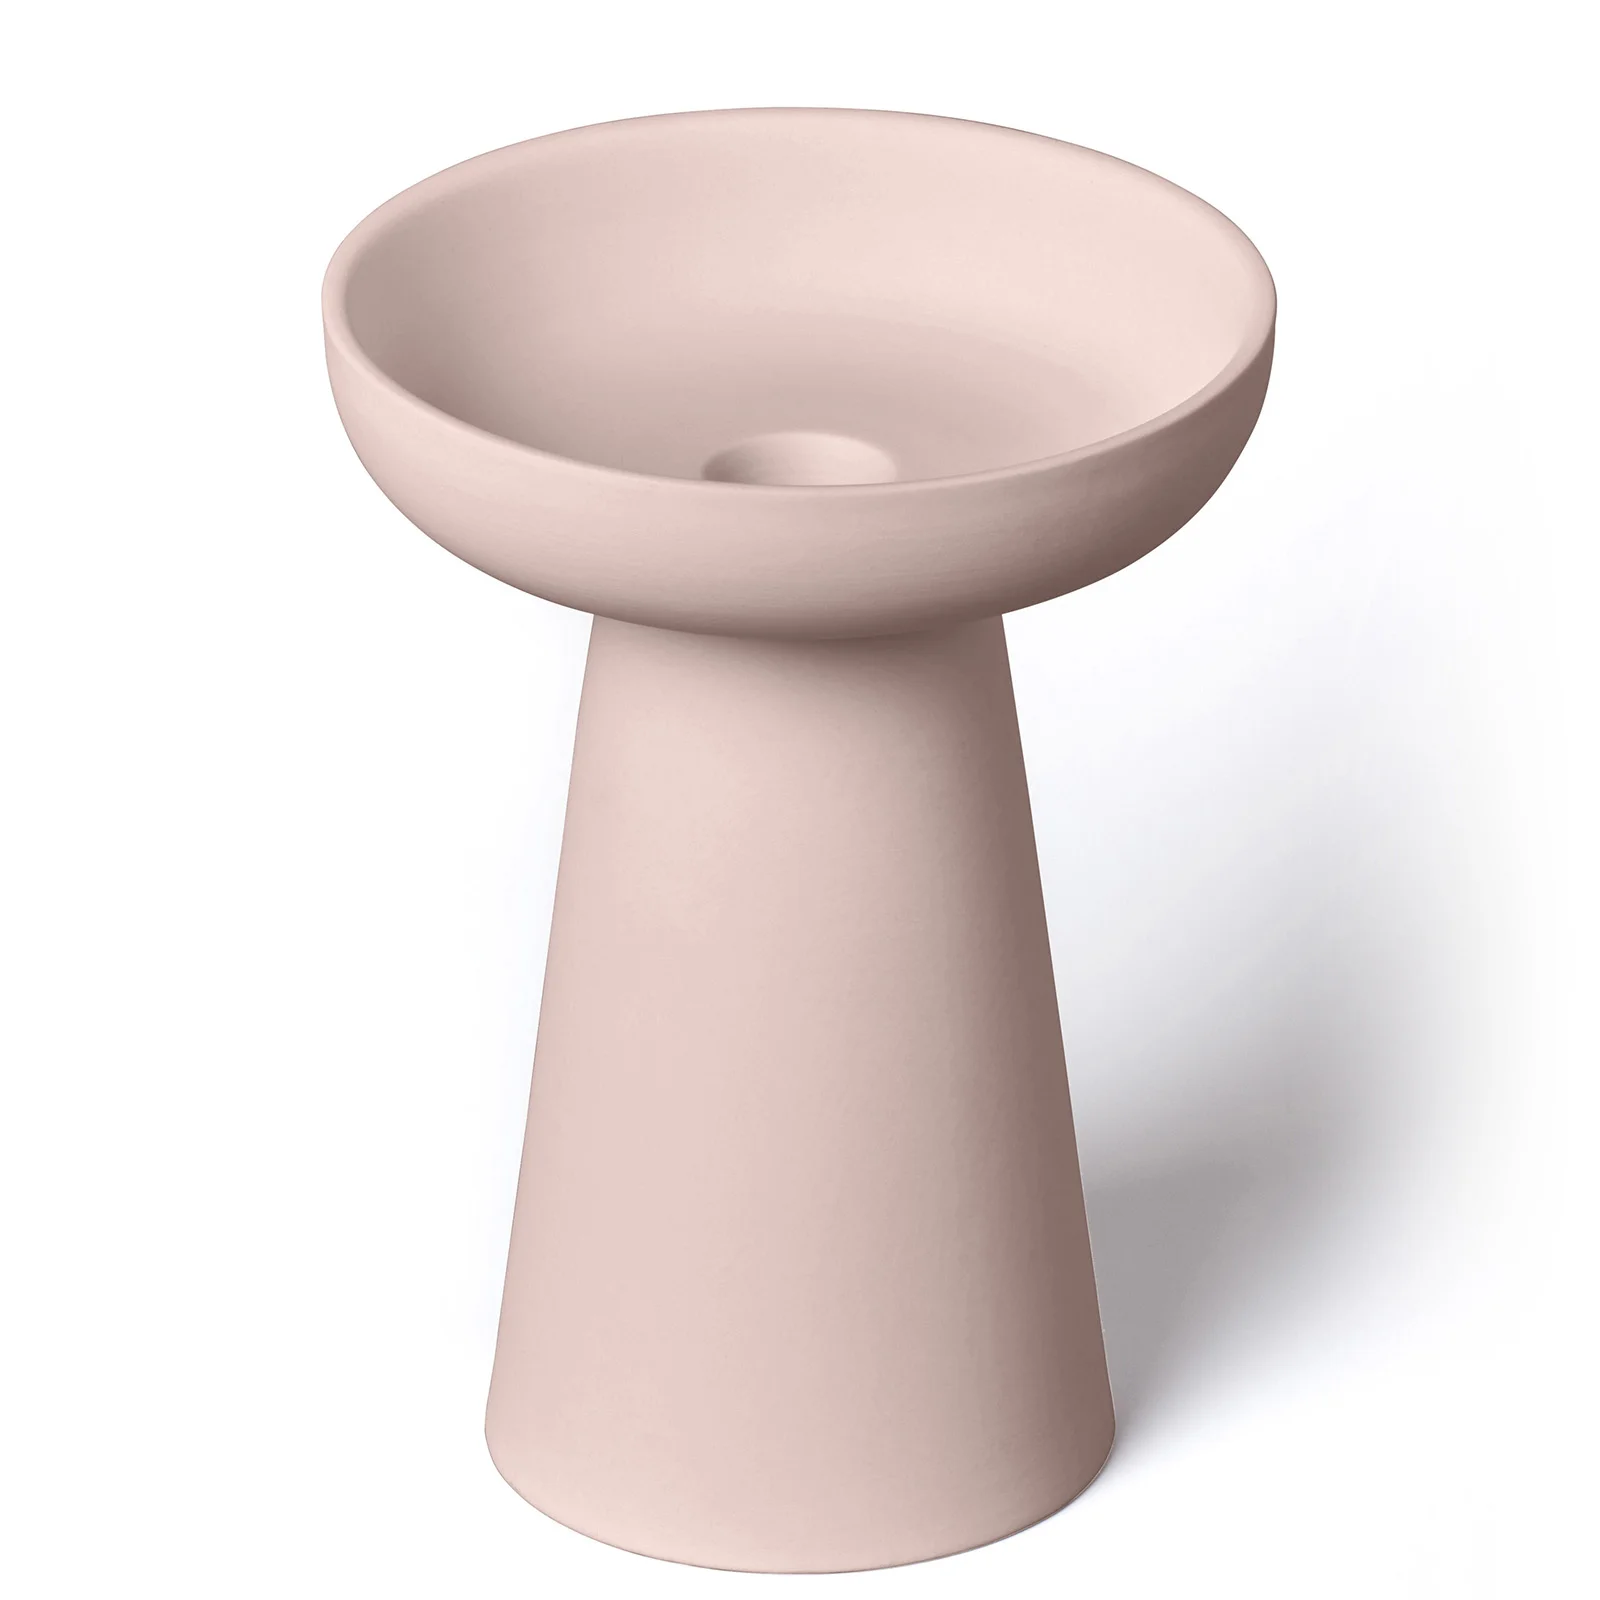 AERY Porcini Candle Holder - Dusty Pink - Large Image 1